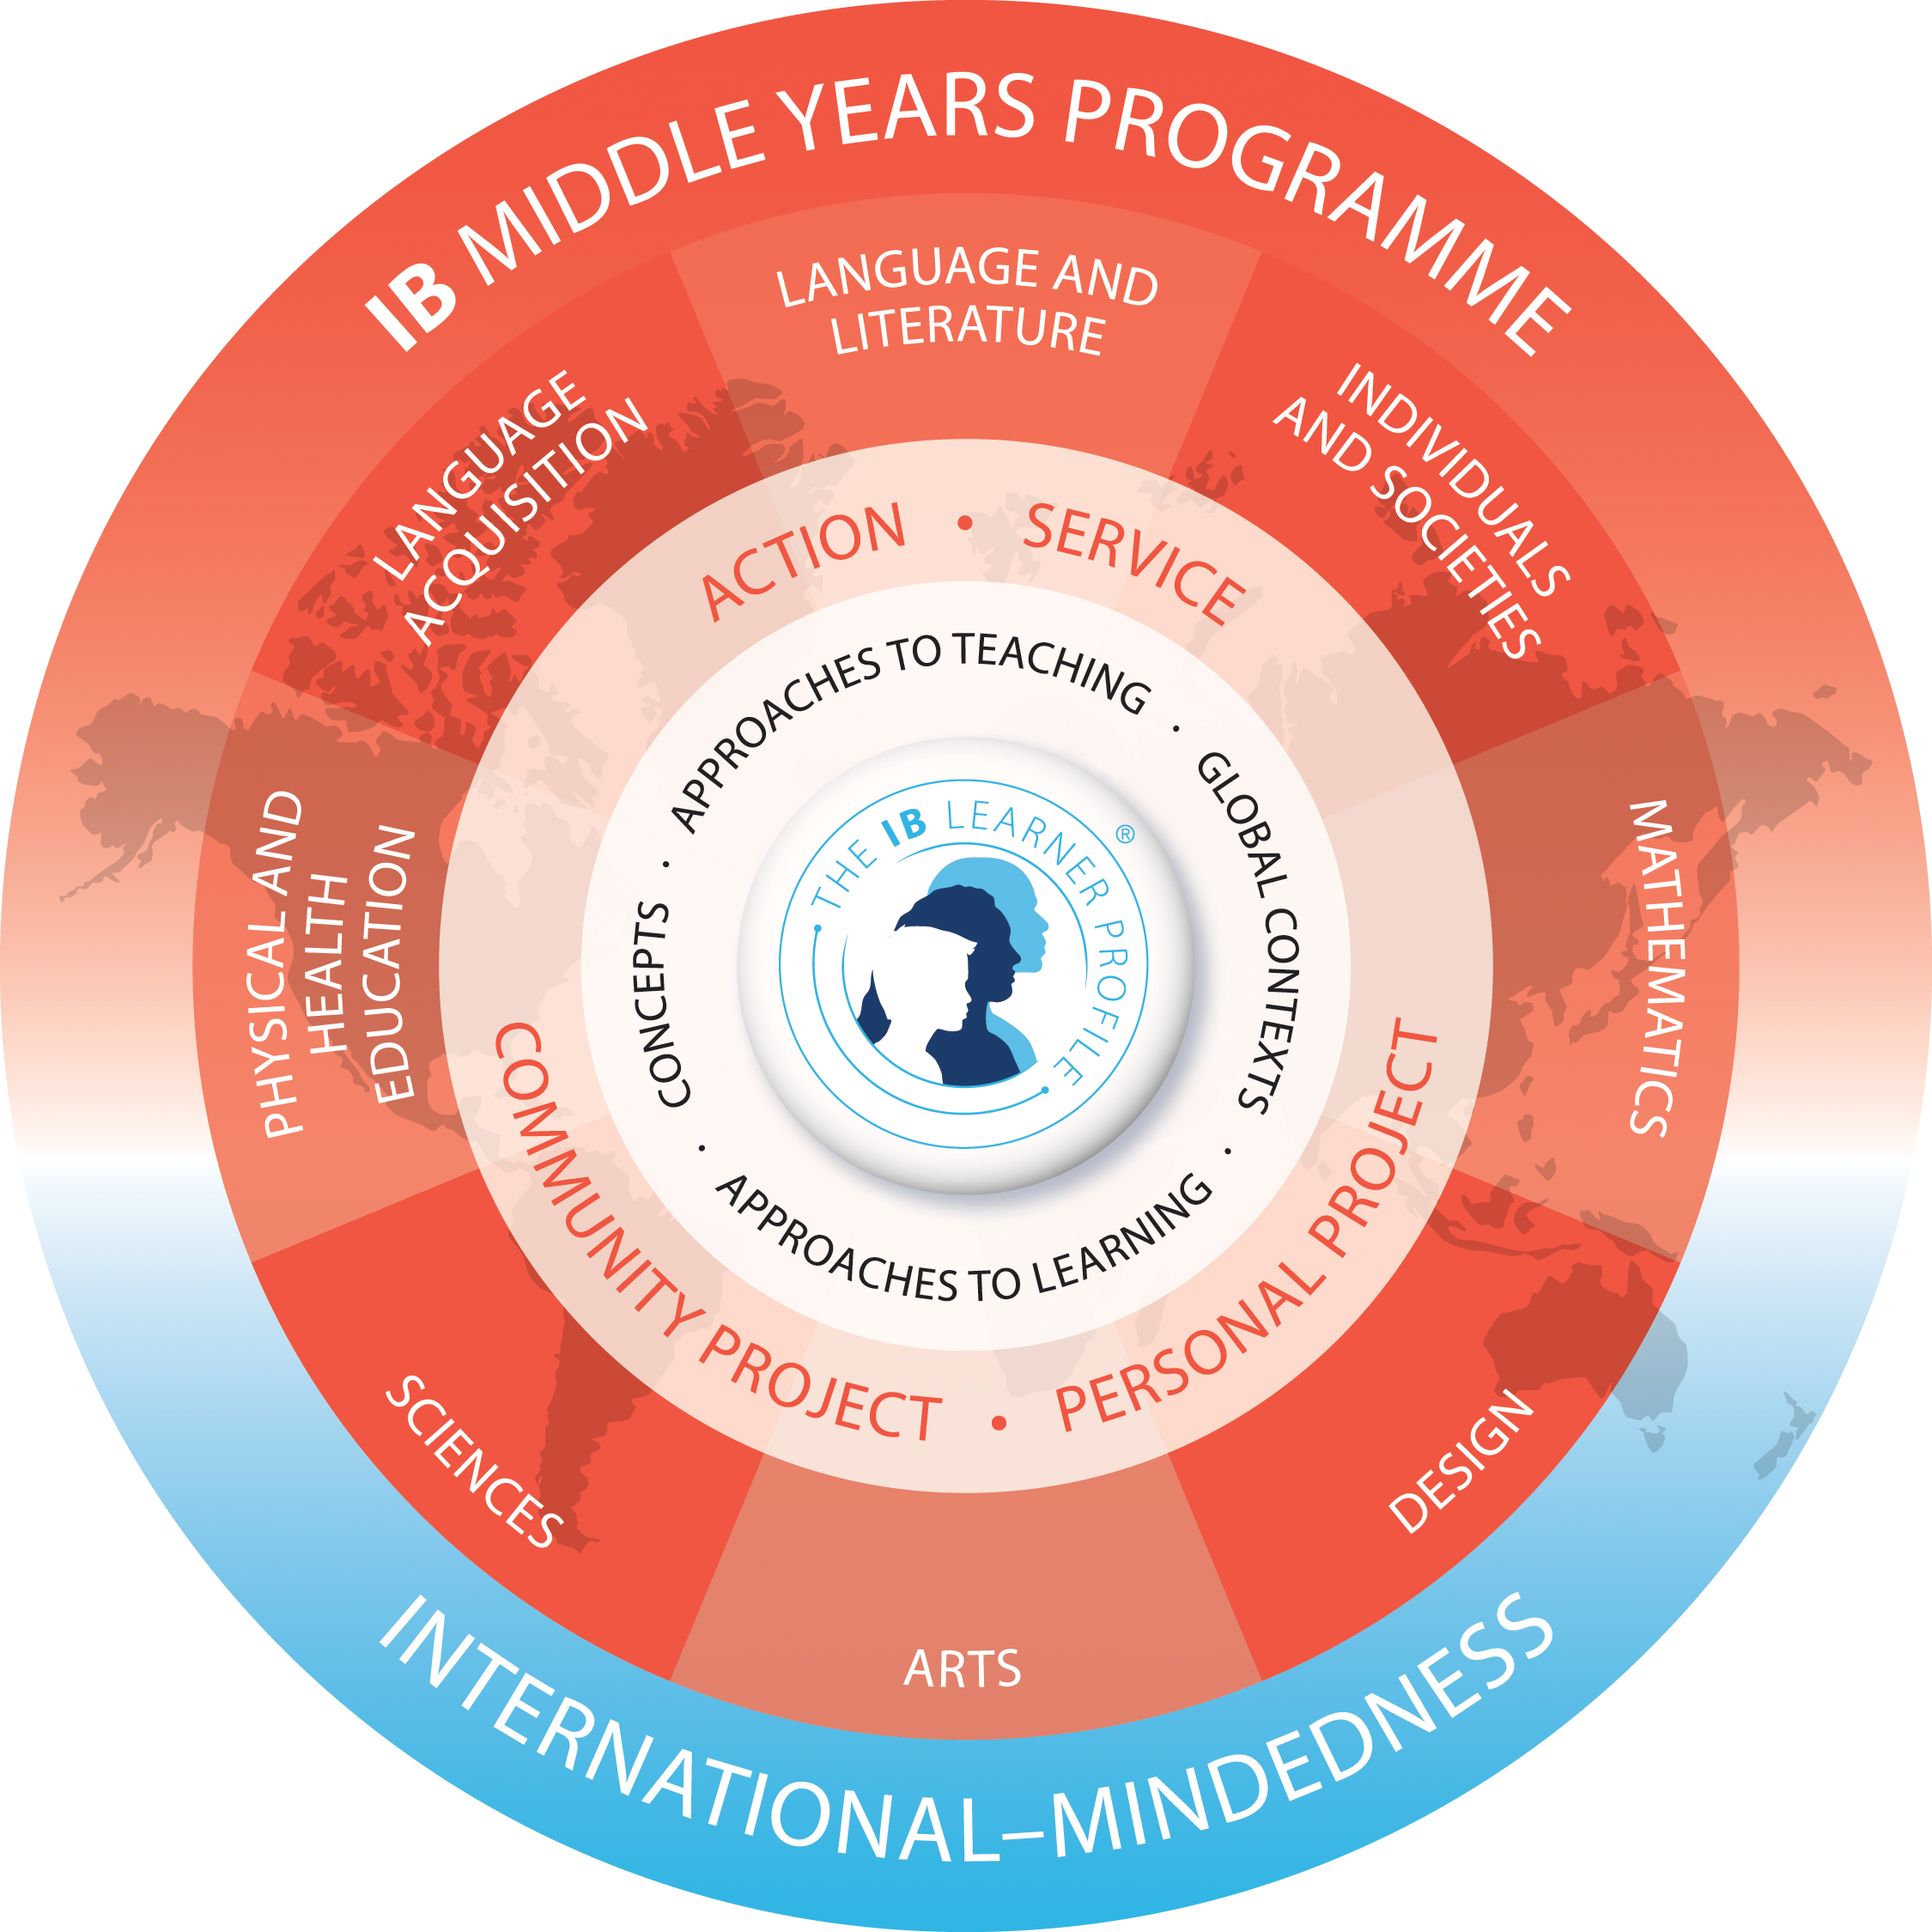 Middle Years Program - IB AUthorization